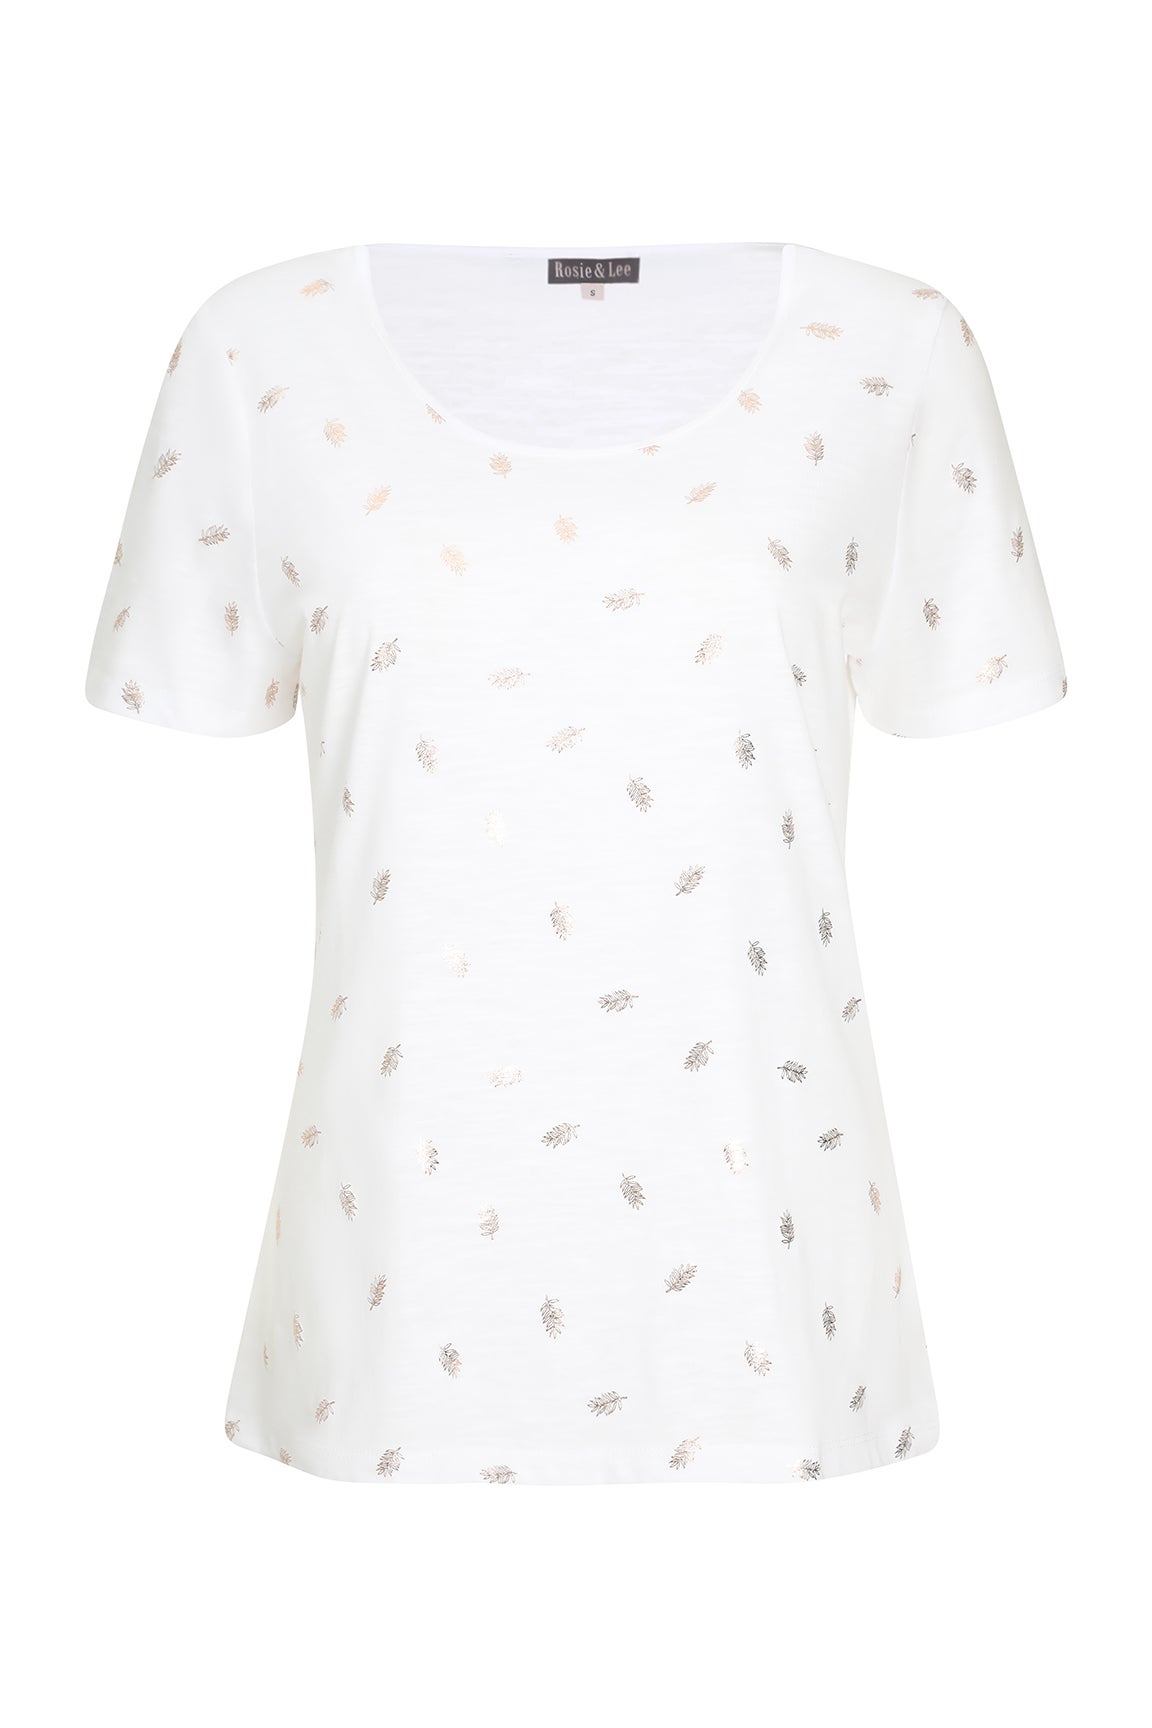 Latest Foli printed simple blouse